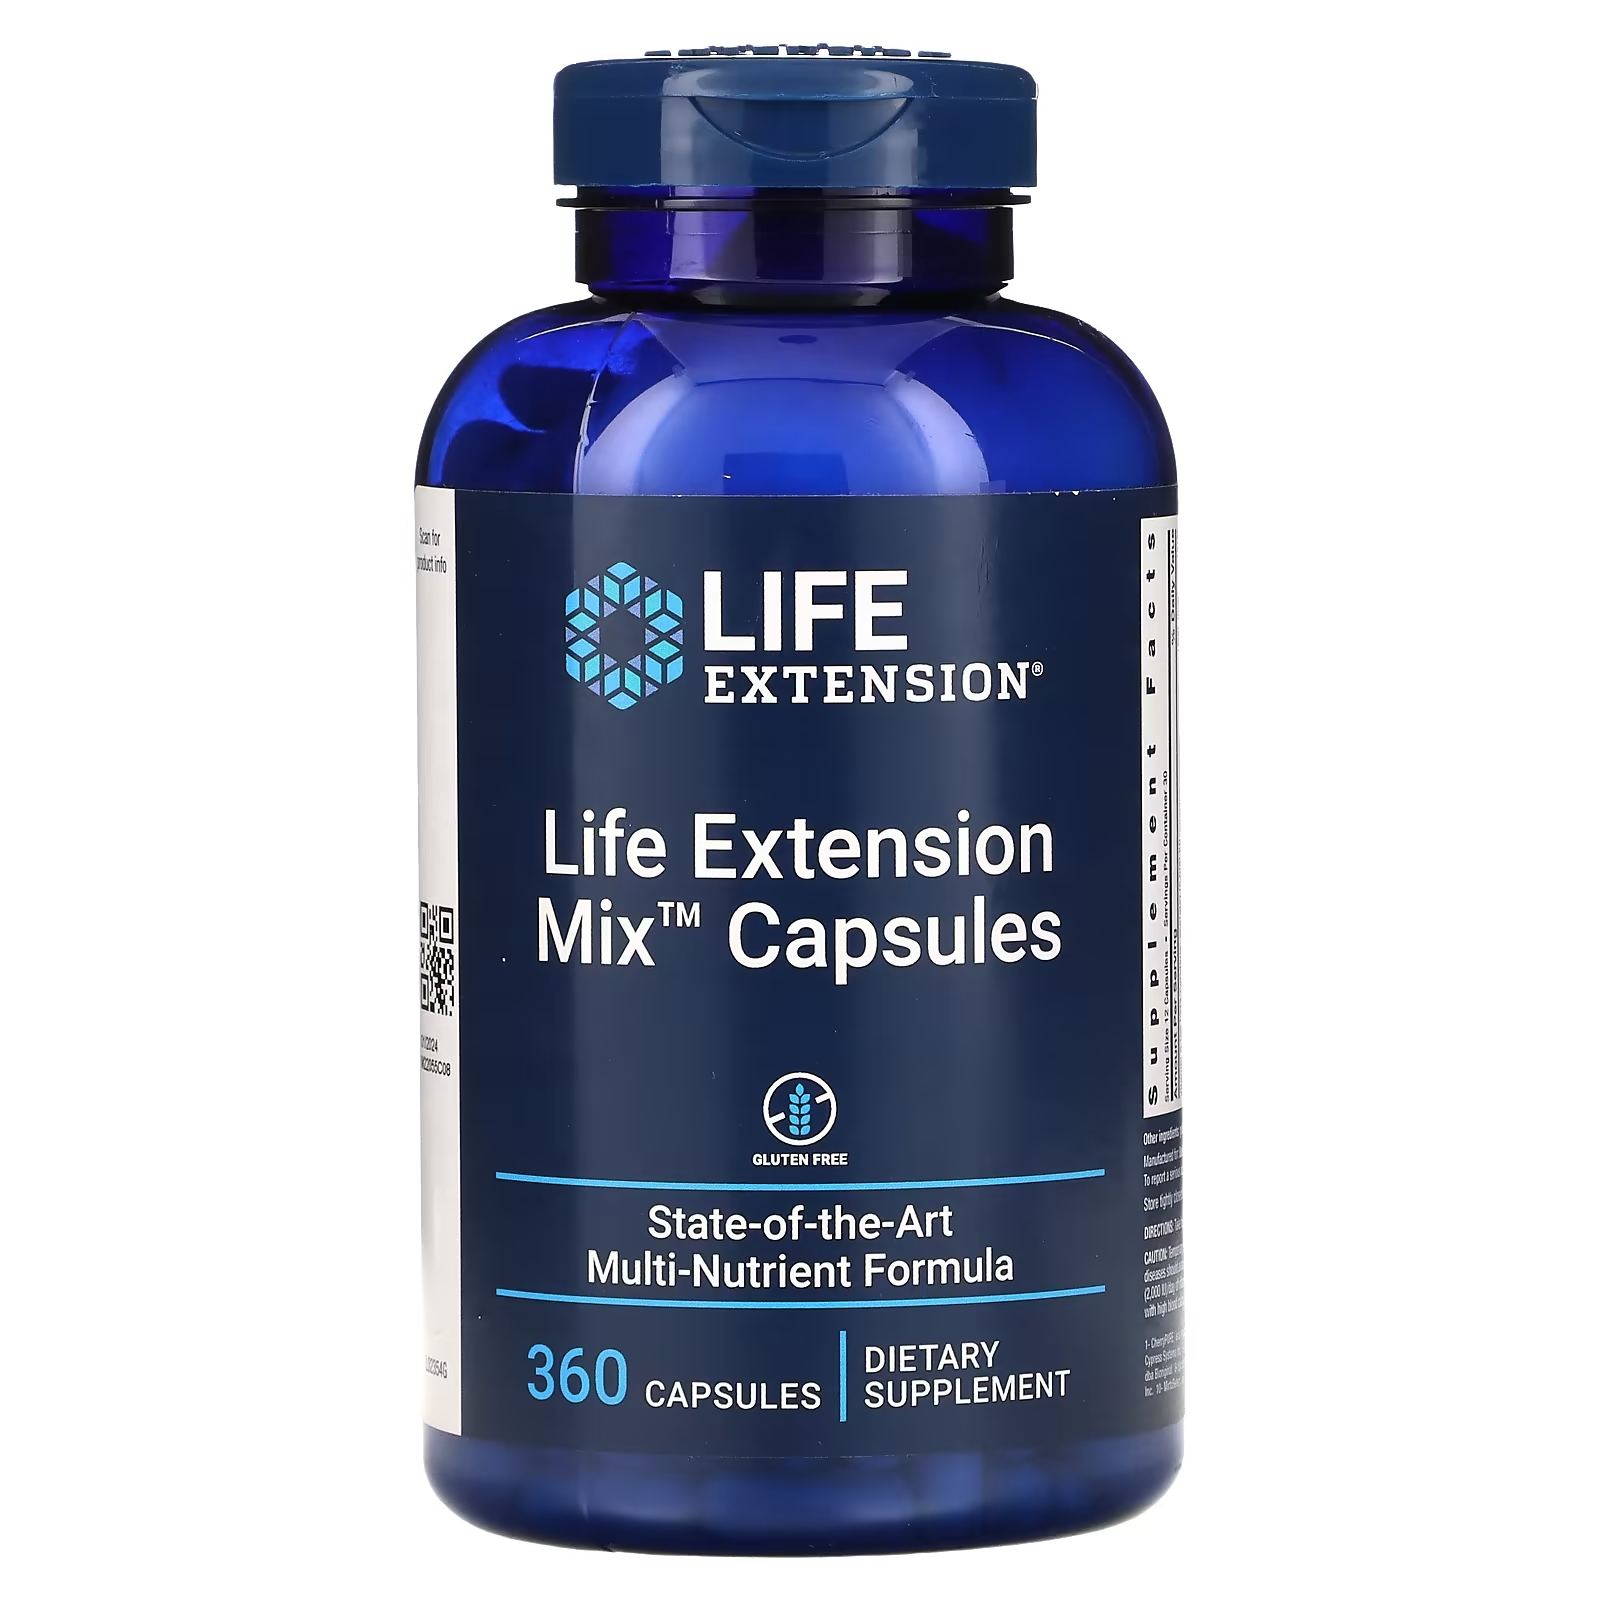 Комплексная Добавка Life Extension Mix в капсулах, 360 капсул пищевая добавка life extension life extension mix 360 капсул